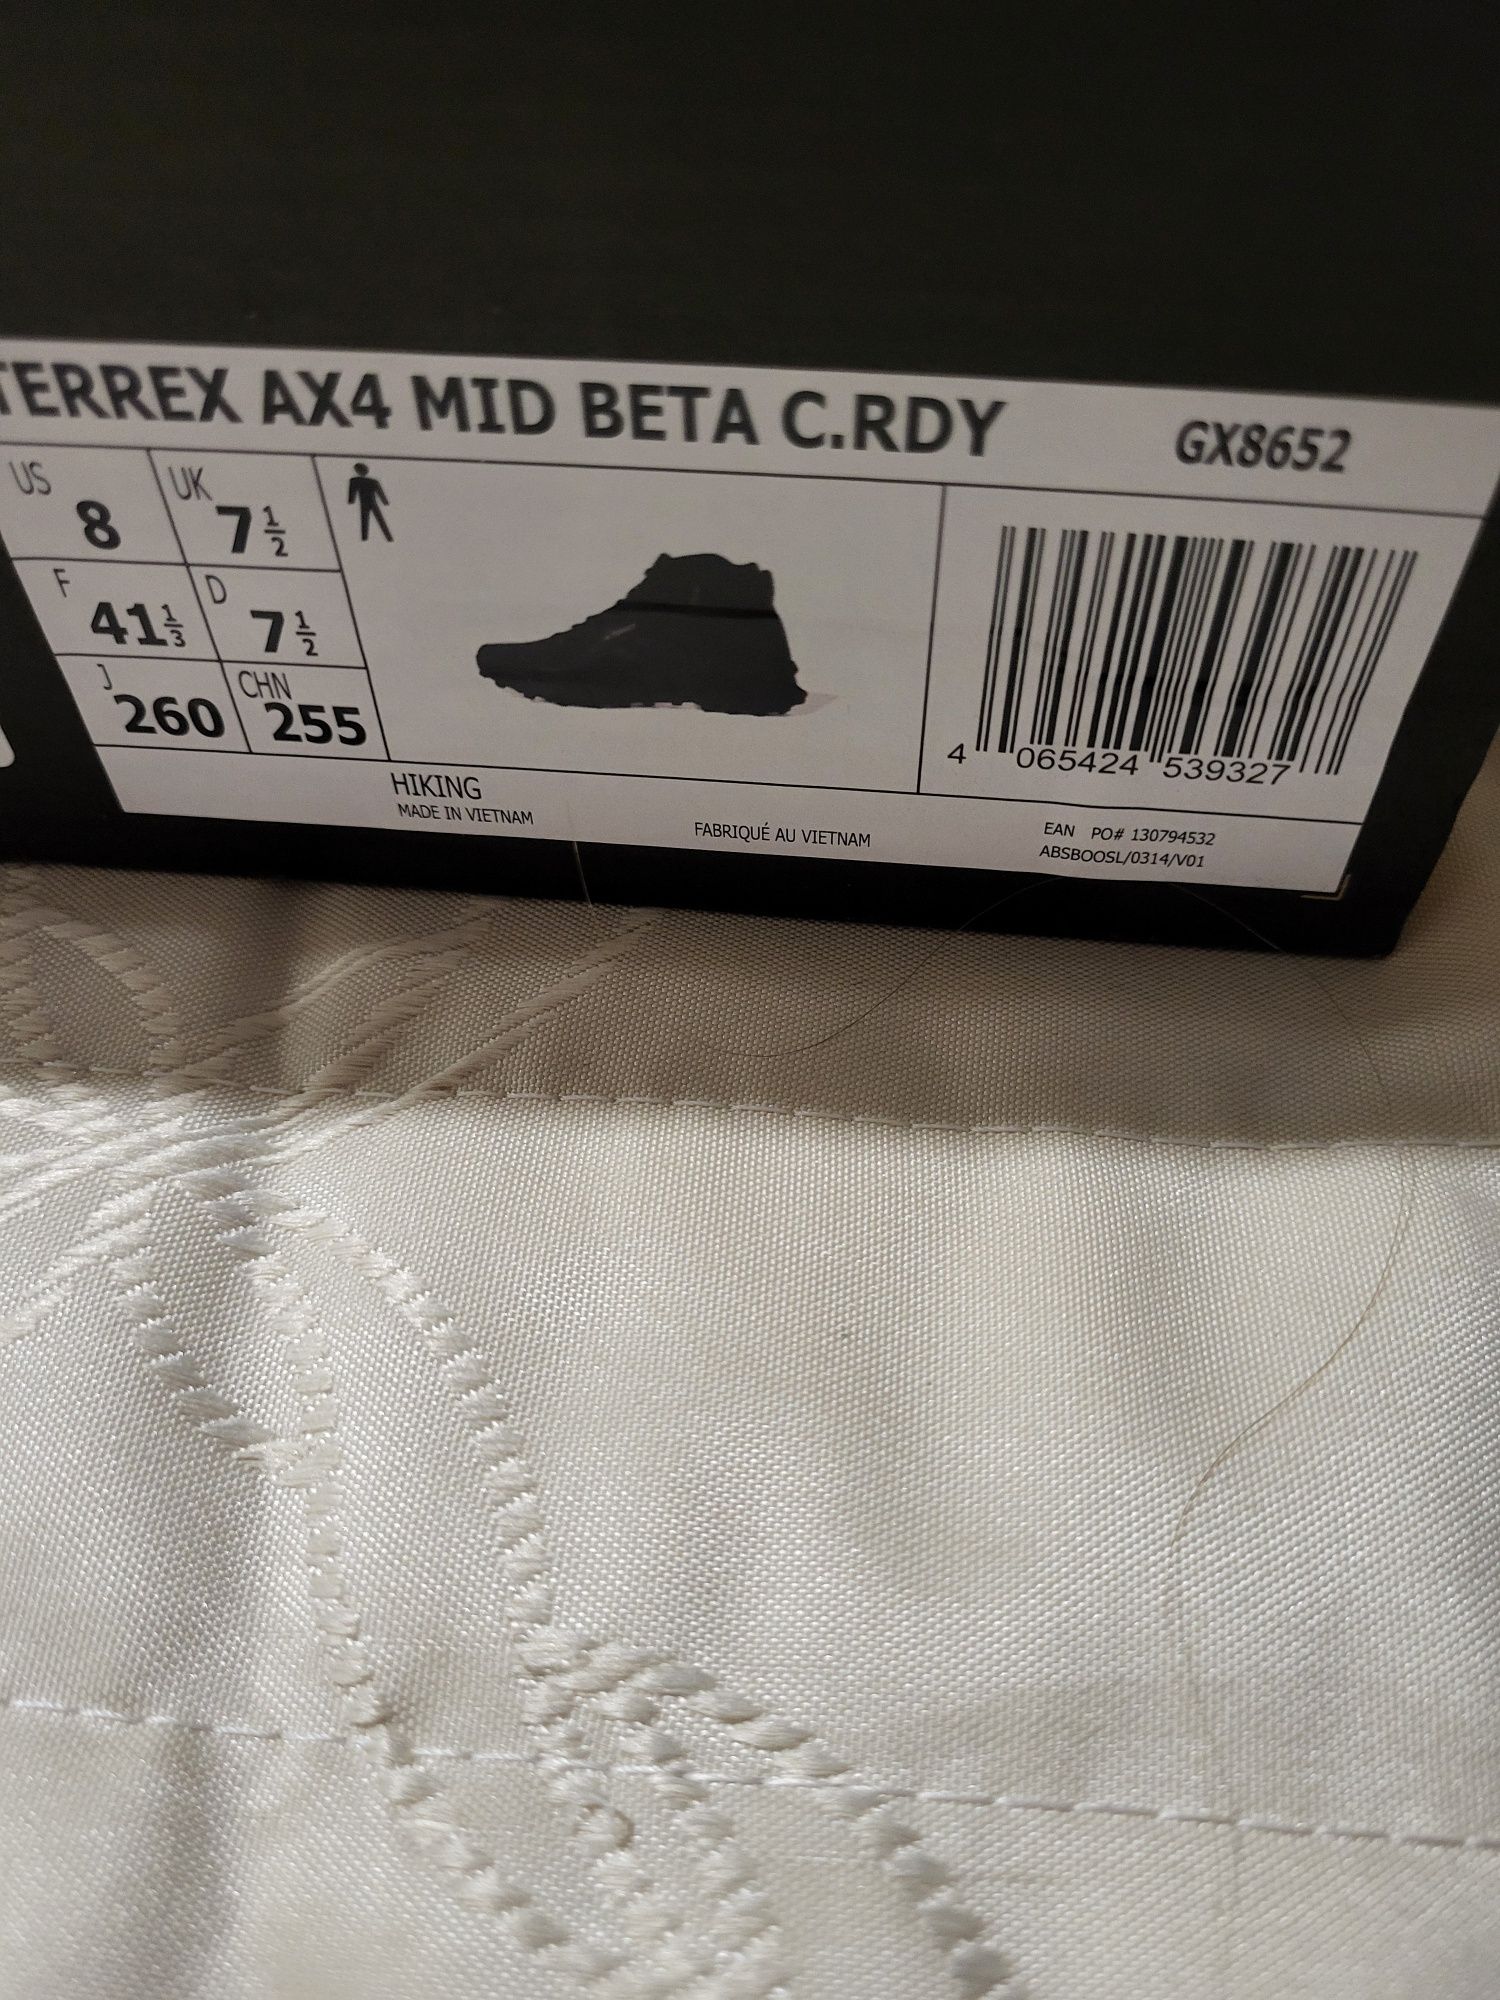 Adidas AX4 mid beta c.rdy